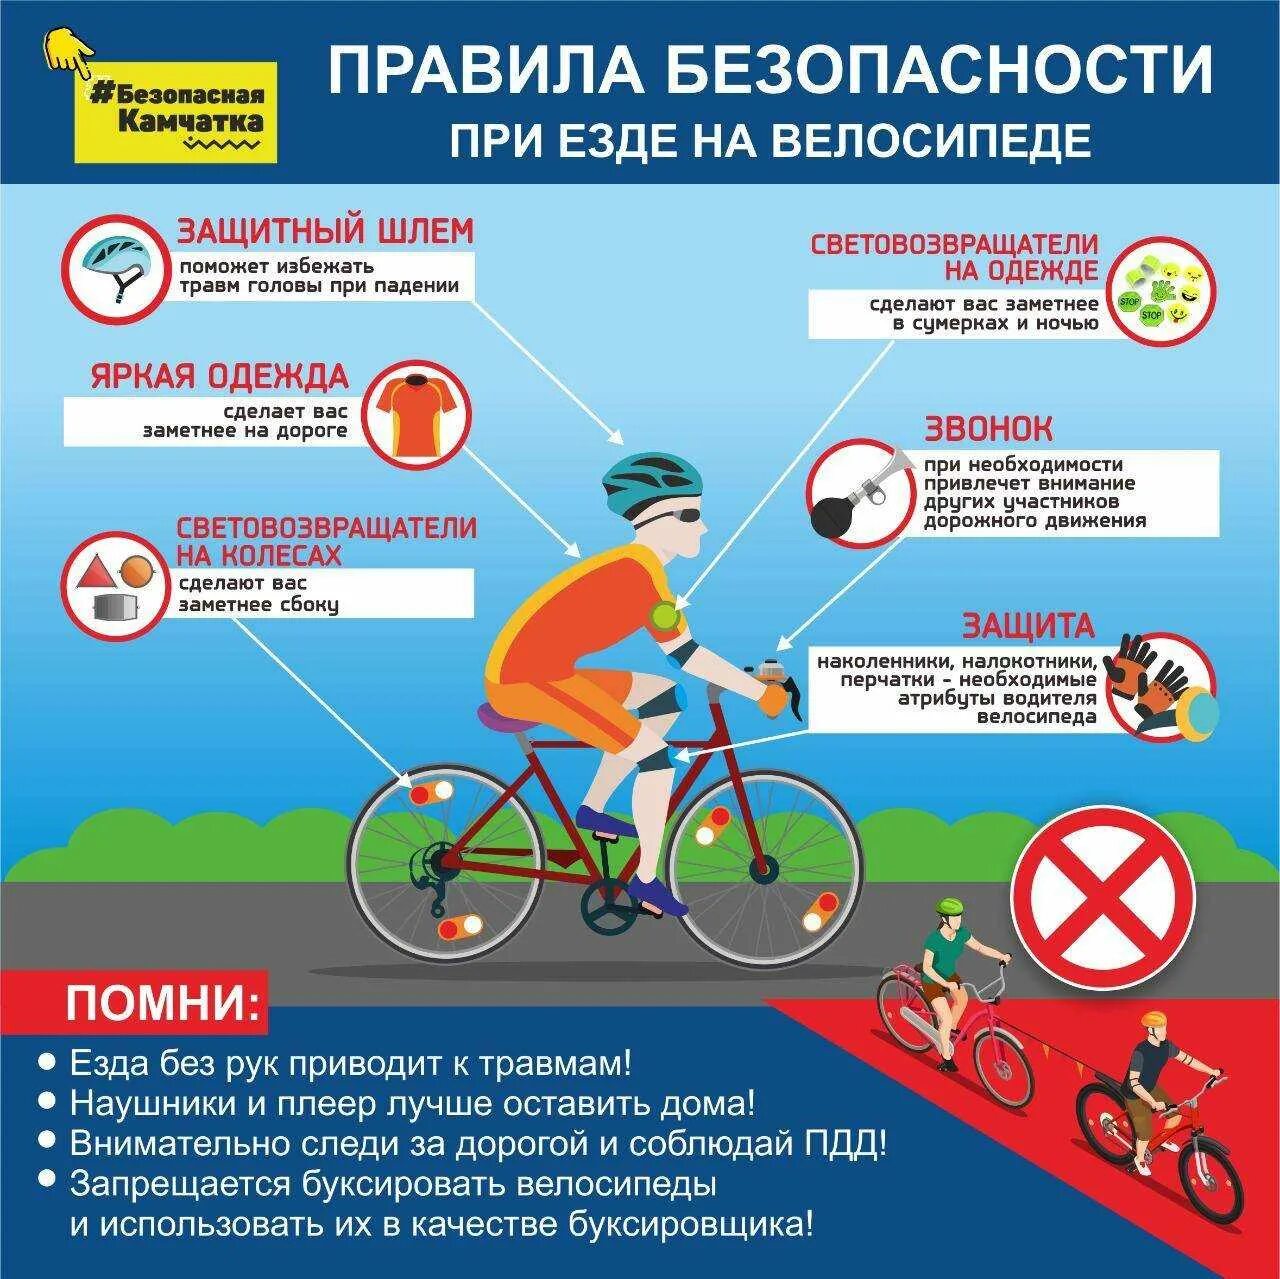 Можно ли вернуть велосипед в магазин. Правила для велосипедистов. Безопасность движения велосипедиста. Памятка велосипедиста. Безопасность езды на велосипеде.